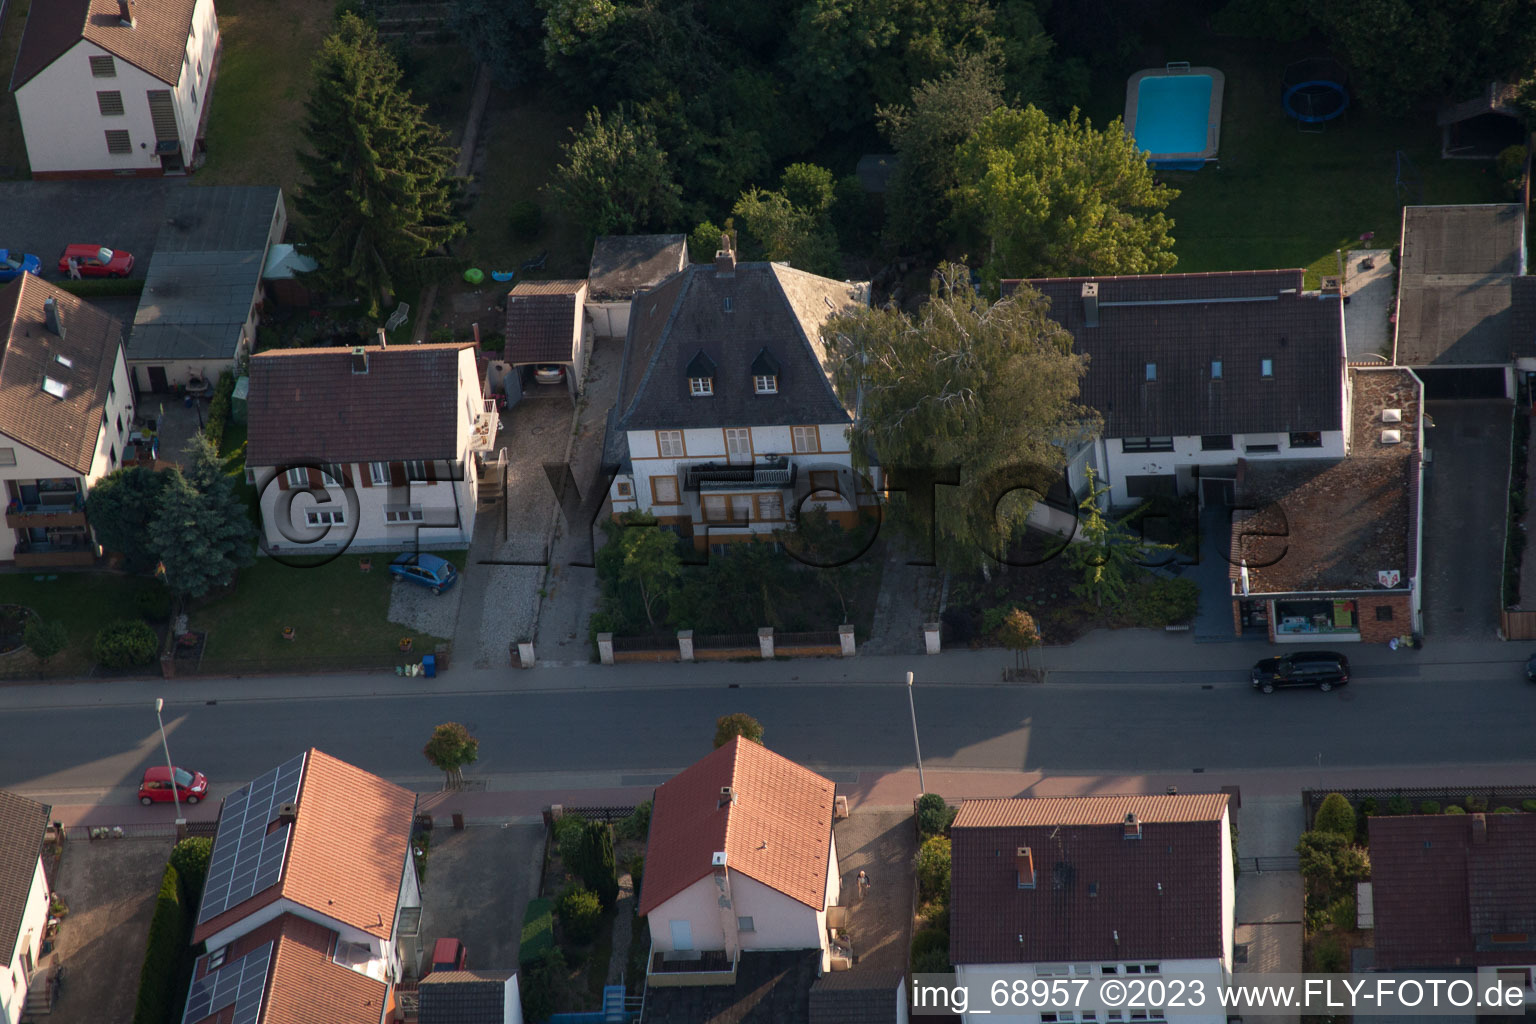 District Dannstadt in Dannstadt-Schauernheim in the state Rhineland-Palatinate, Germany from a drone